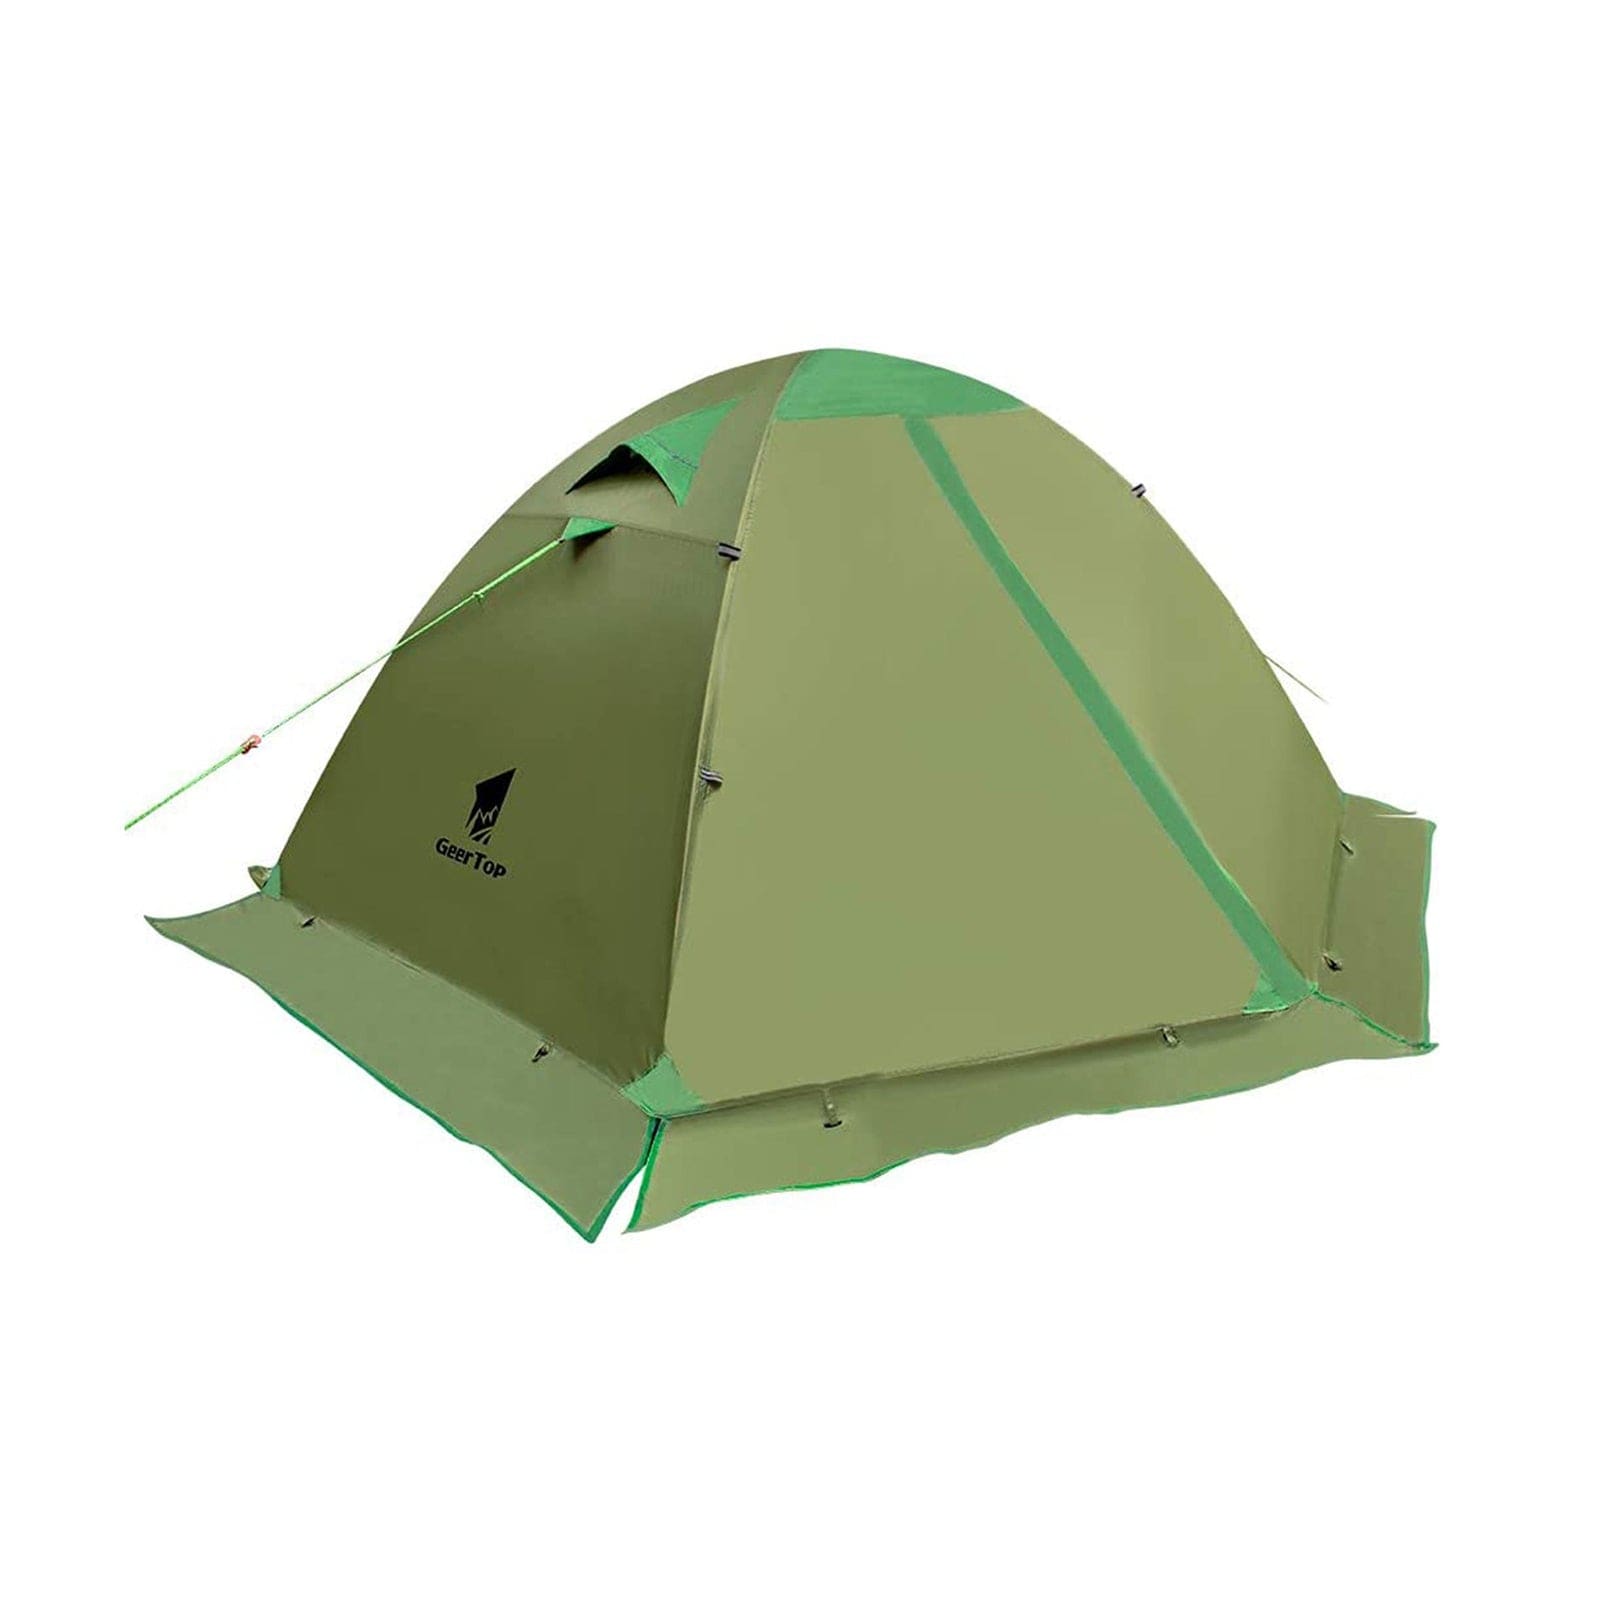 GeerTop 2 Person 4 Season Backpacking Camping Tent Waterproof 